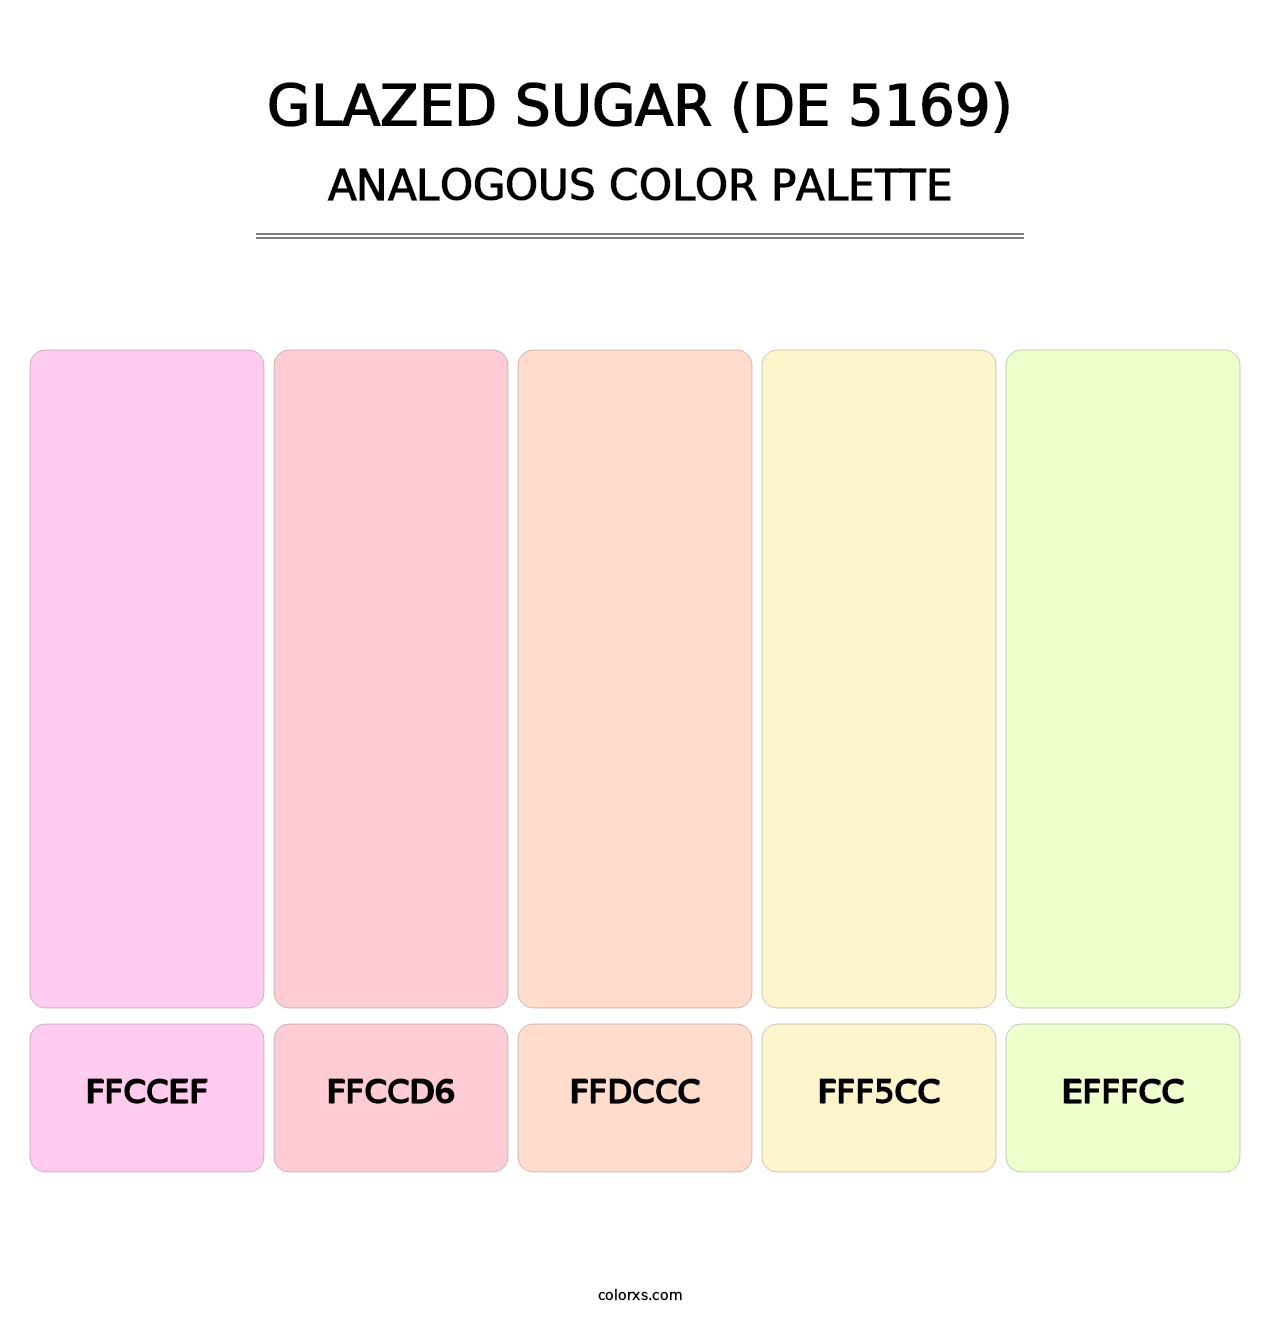 Glazed Sugar (DE 5169) - Analogous Color Palette